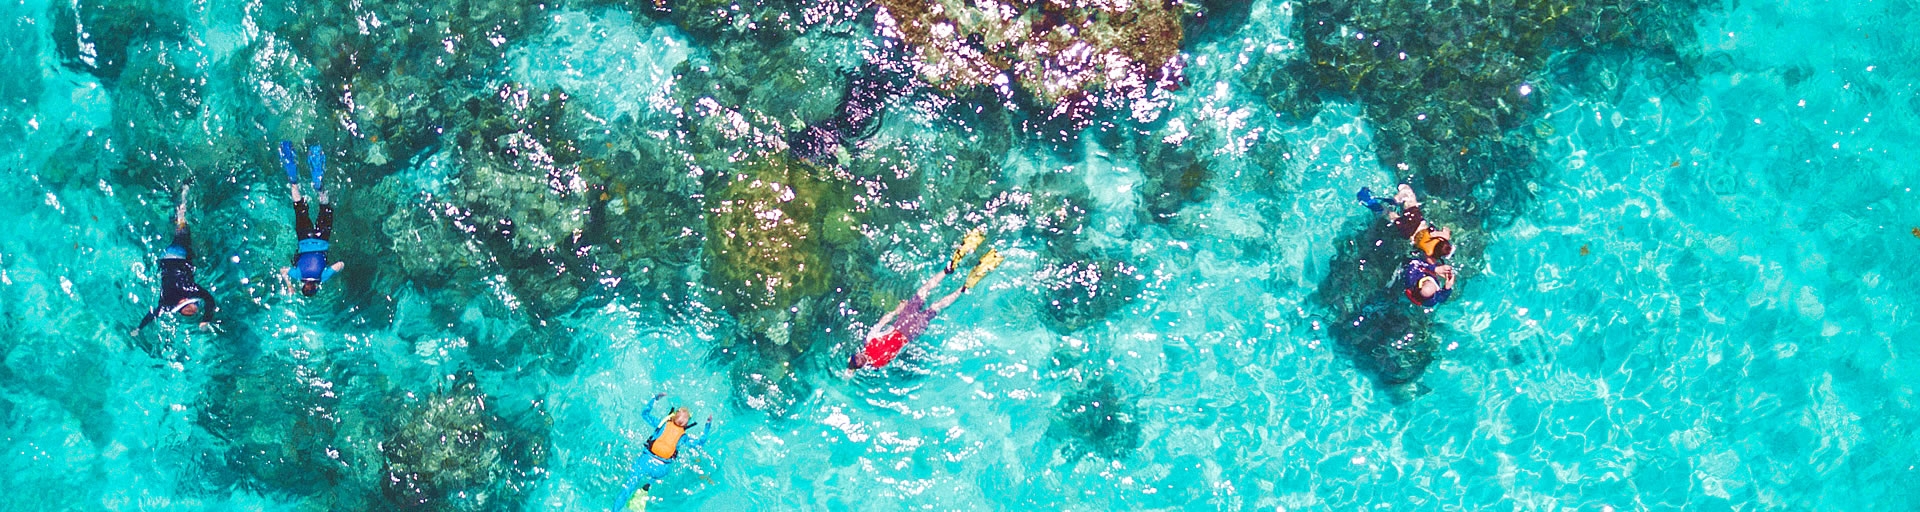 snorkeling Belize, Central America